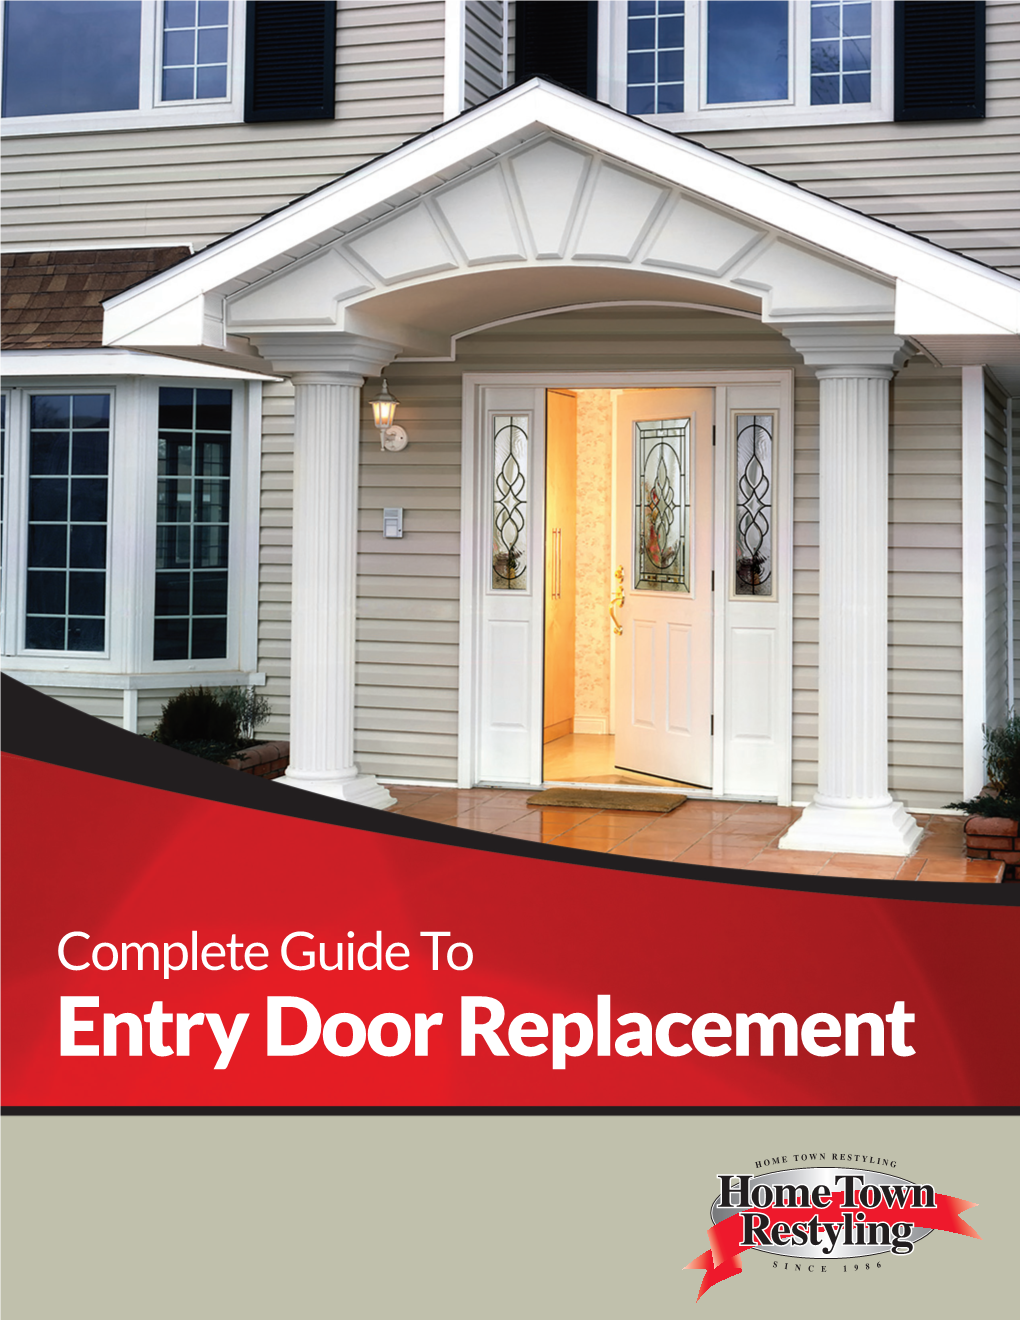 Entry Door Replacement Contents